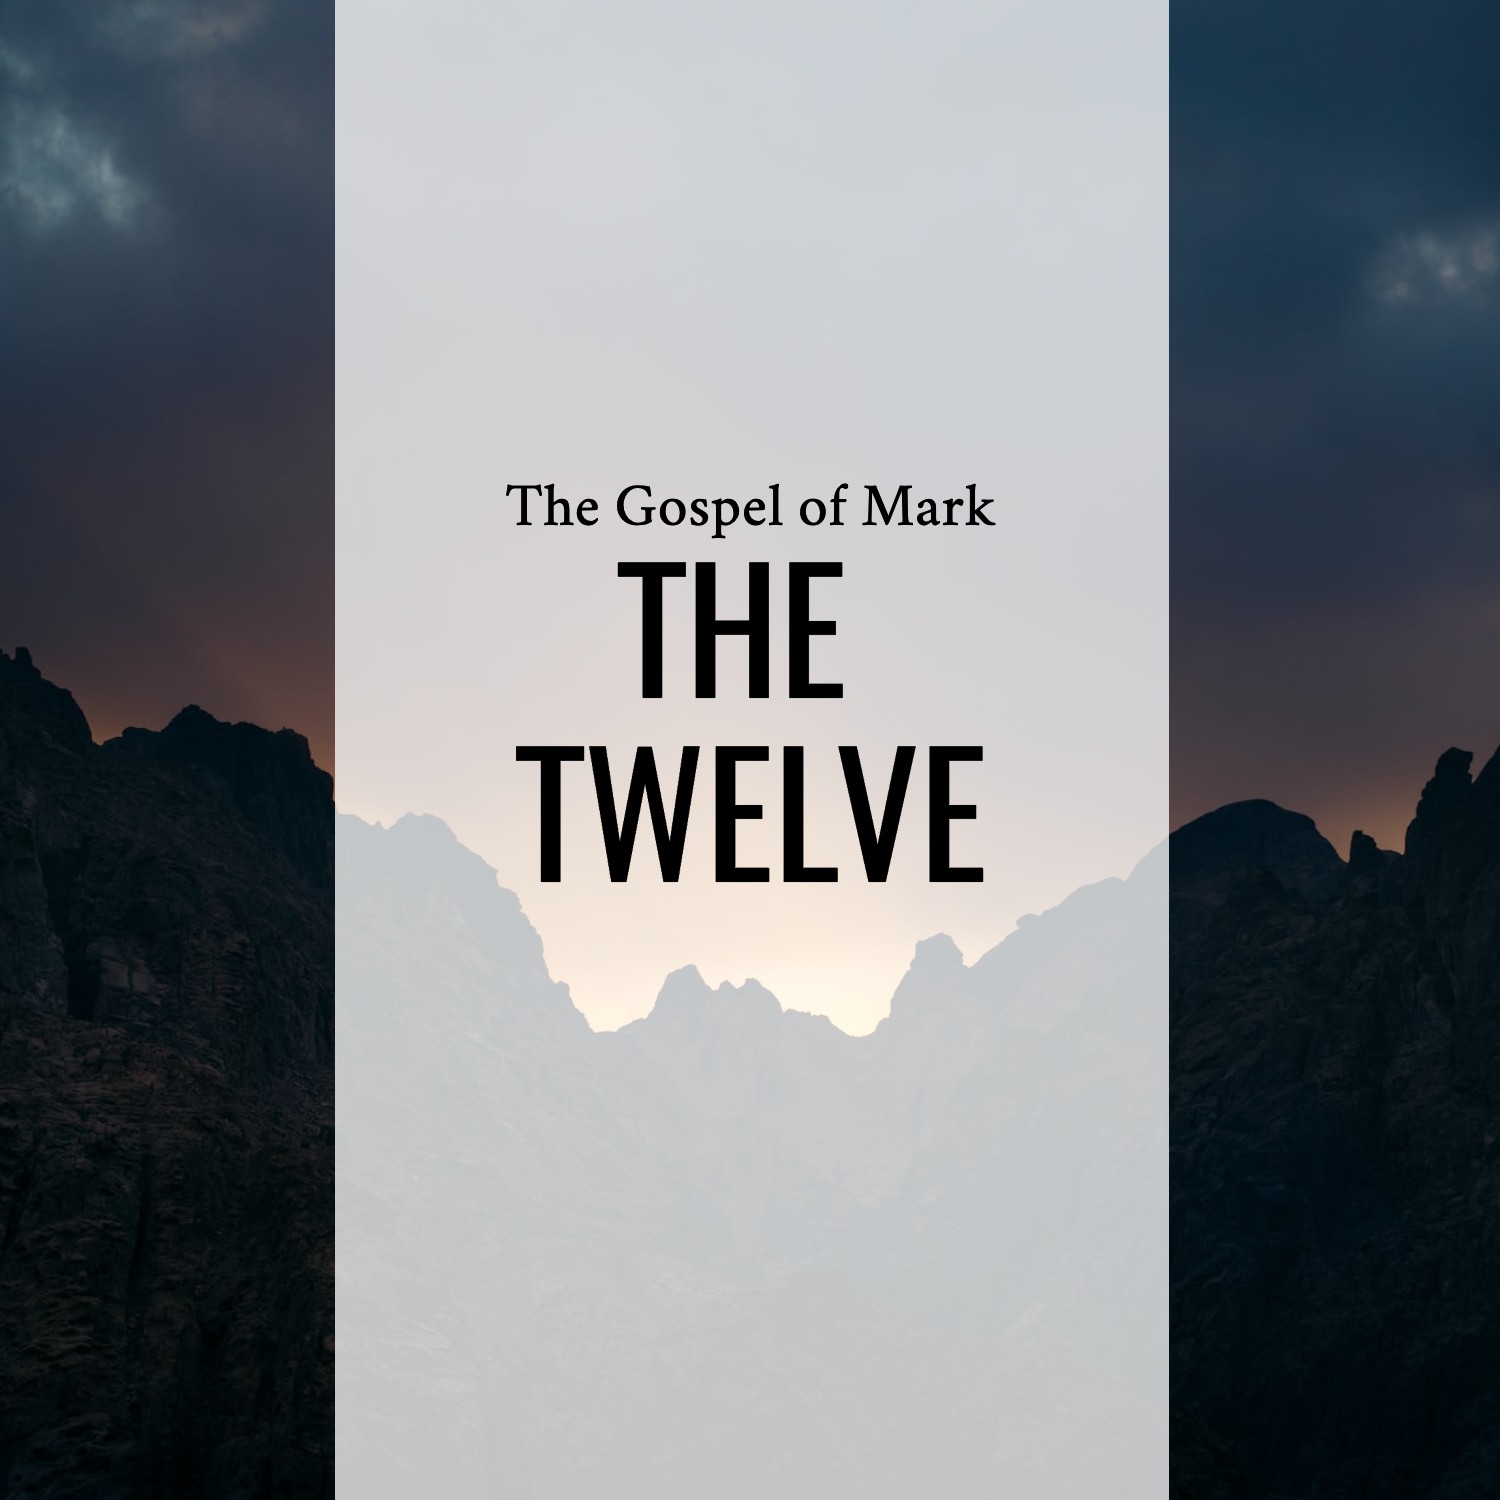 Ep 142 - Mark 3:7-19 | The Twelve | Aaron Ventura